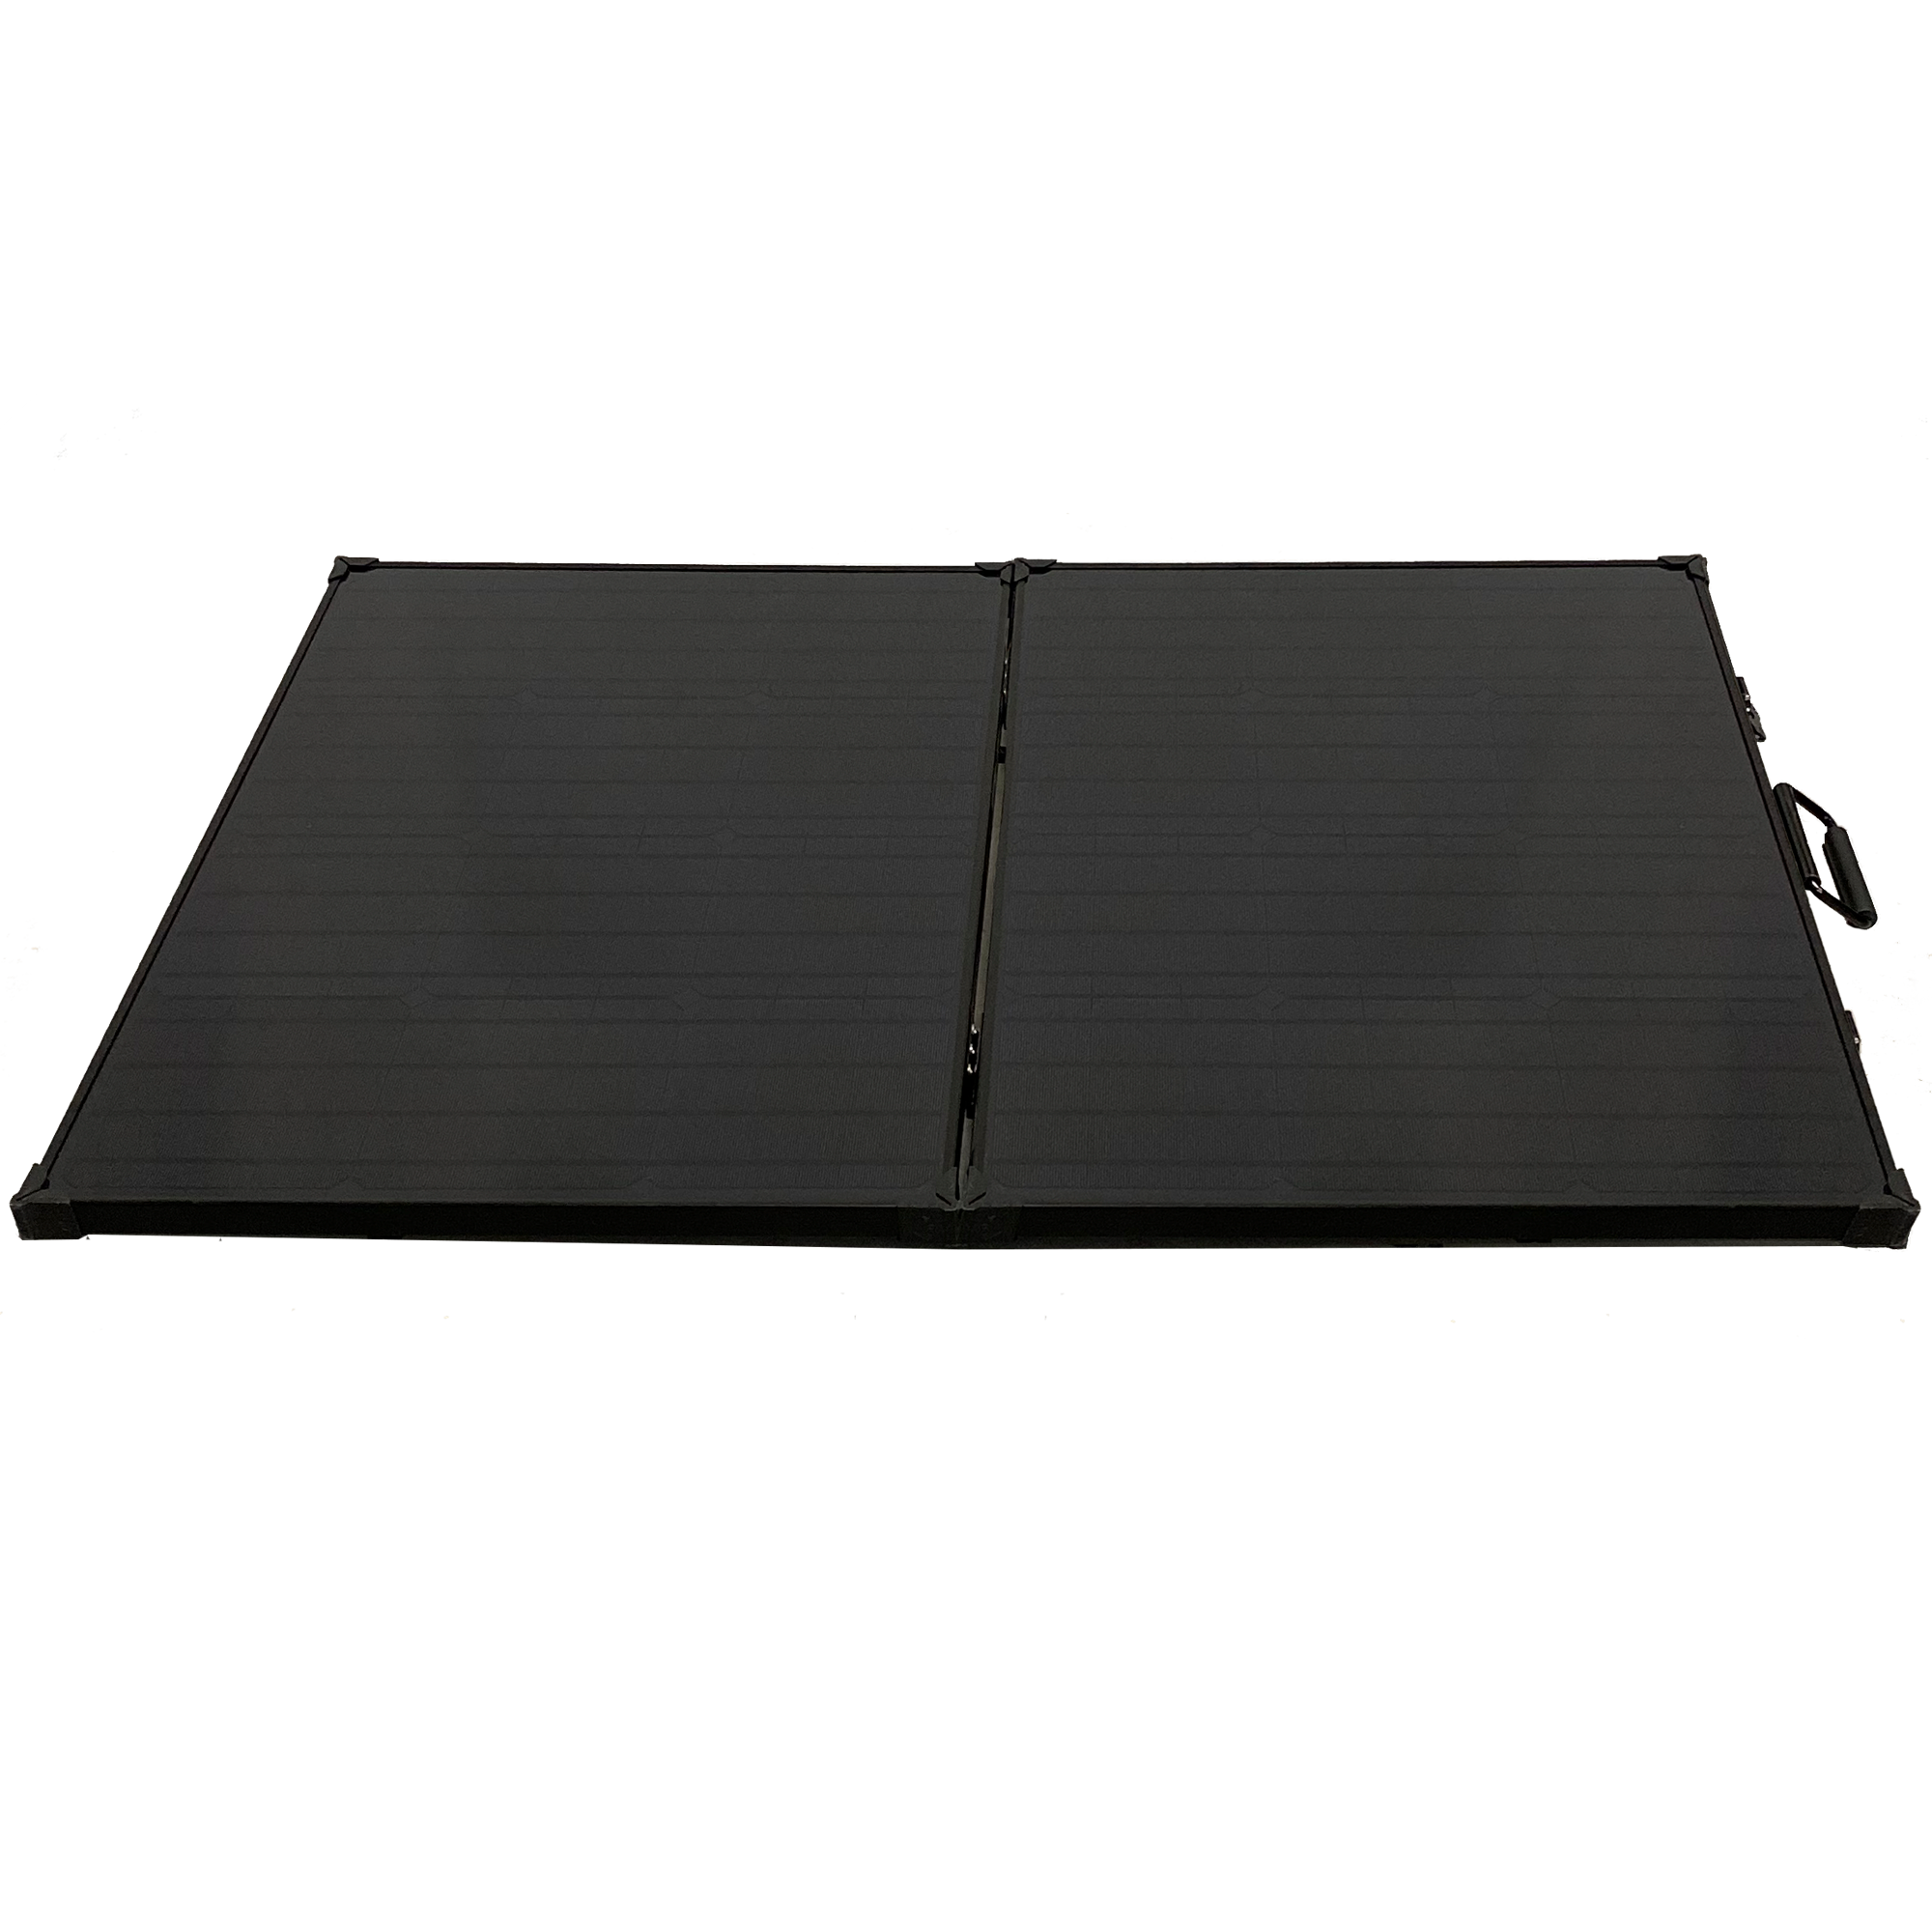 Morningside Lion 100W 24V Solar Panel